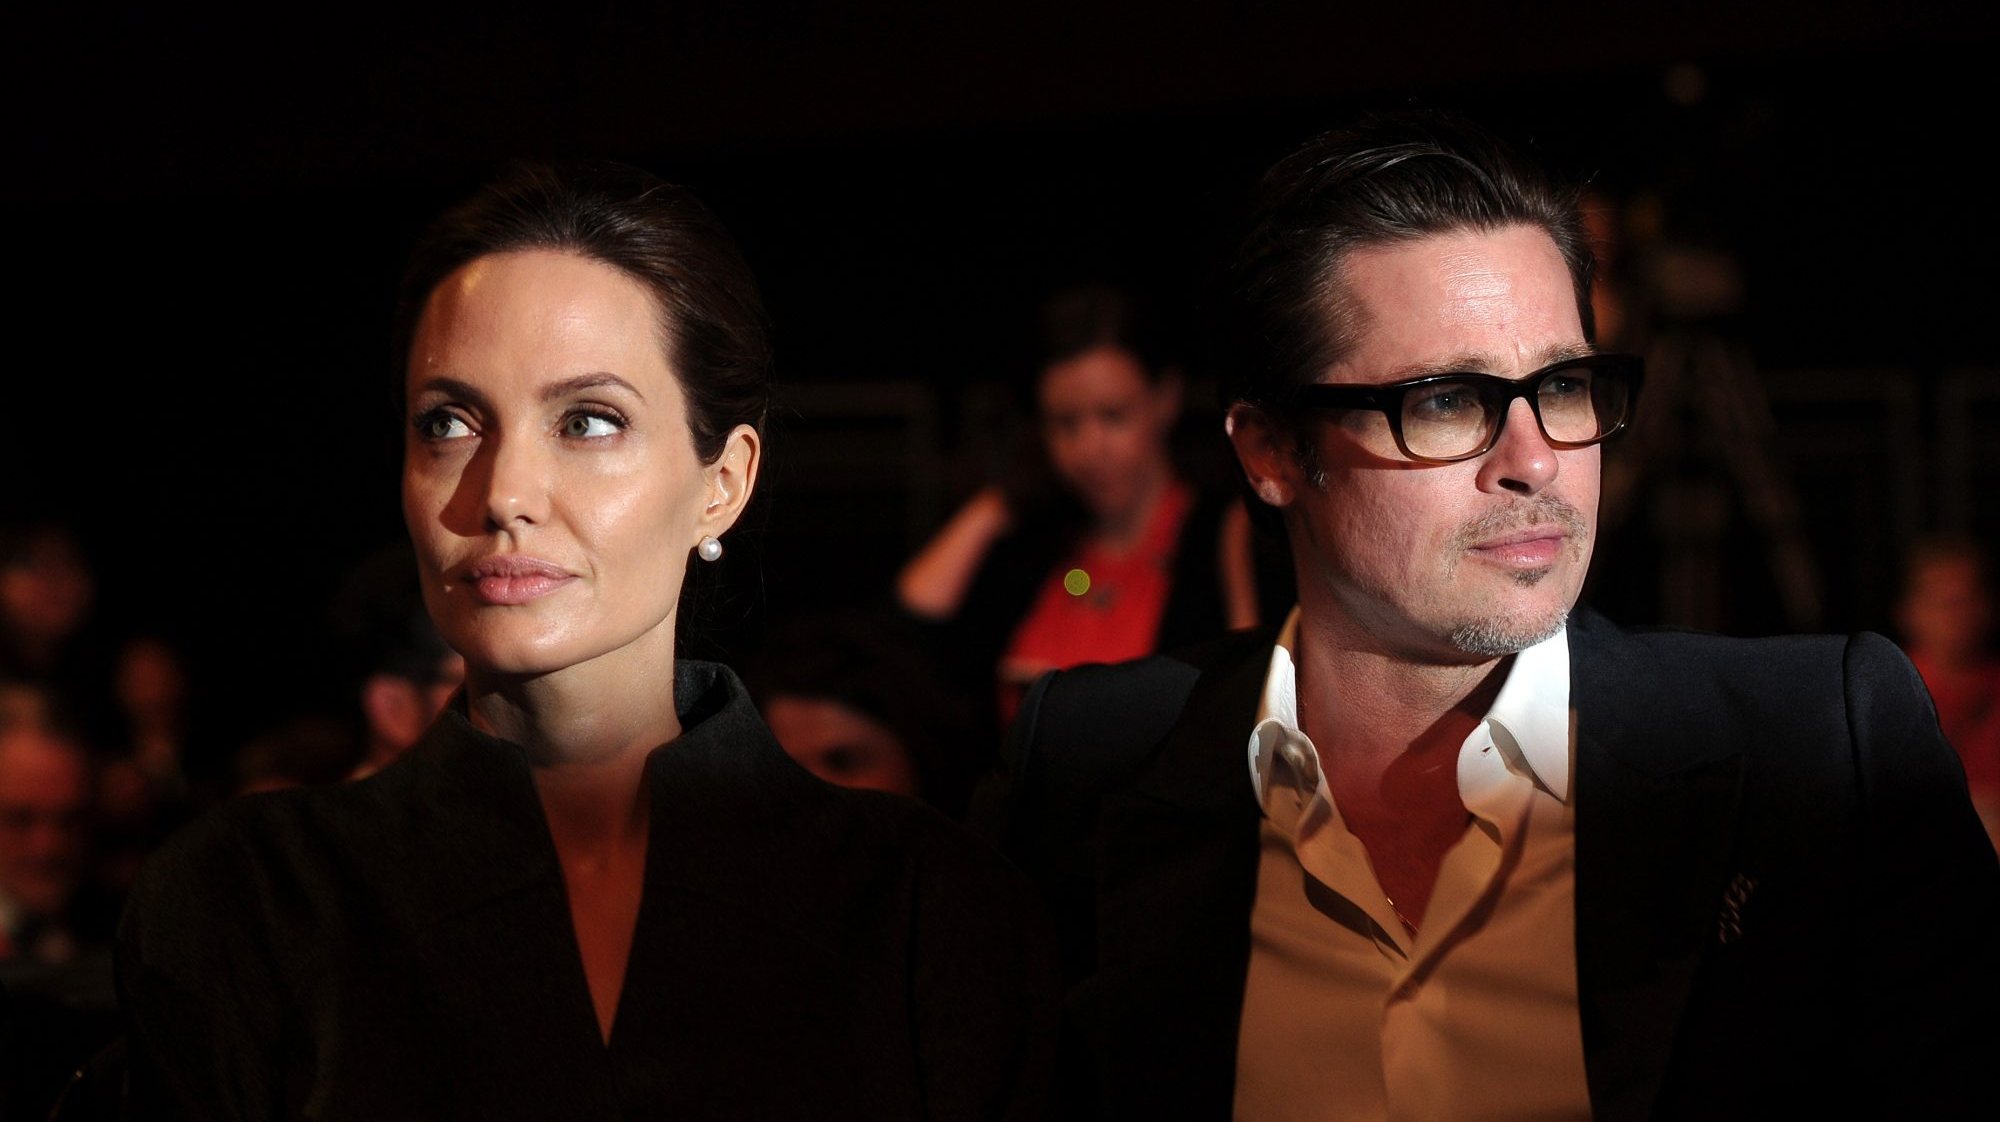 Processos em tribunal, acusações de traição e violência doméstica têm marcado o divórcio de Jolie e Pitt, que se separaram em 2015